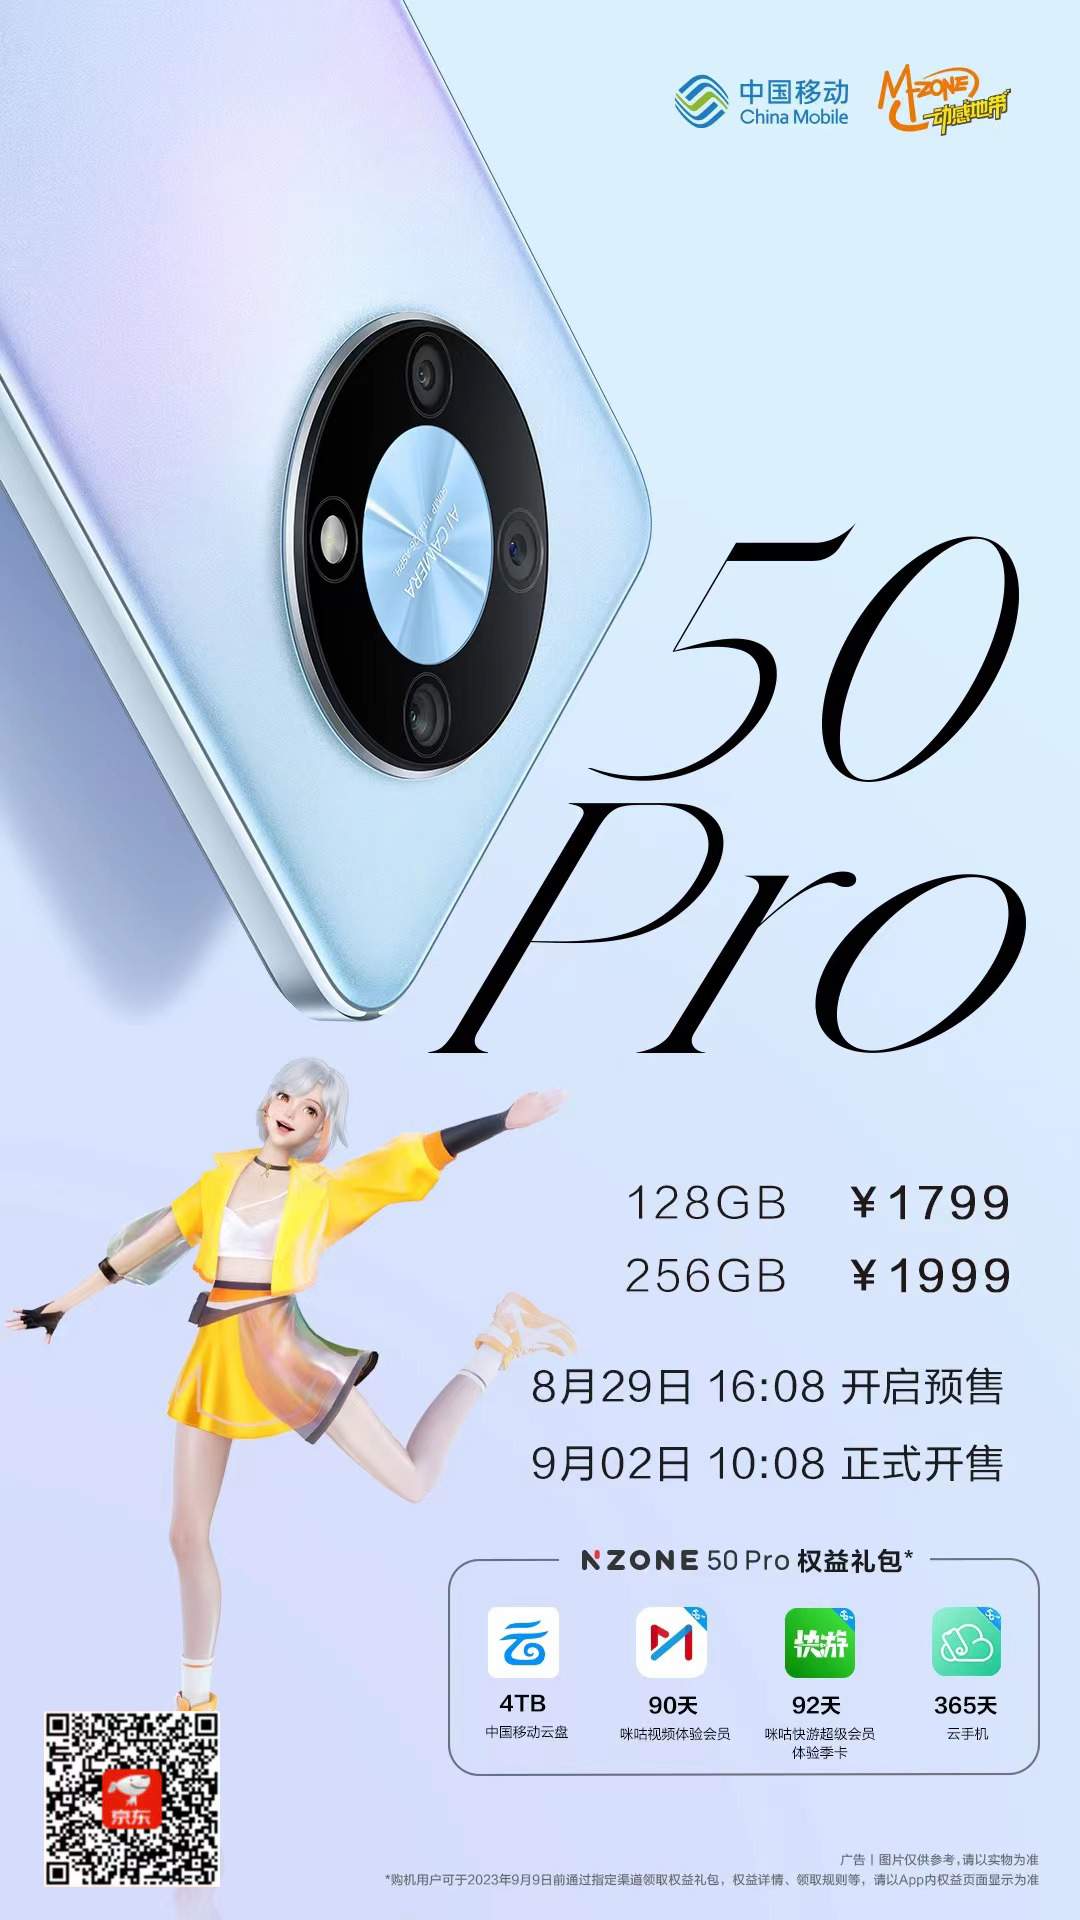 中国移动 NZONE 50 Pro 闪耀出色尽显潮酷！开启心动预售